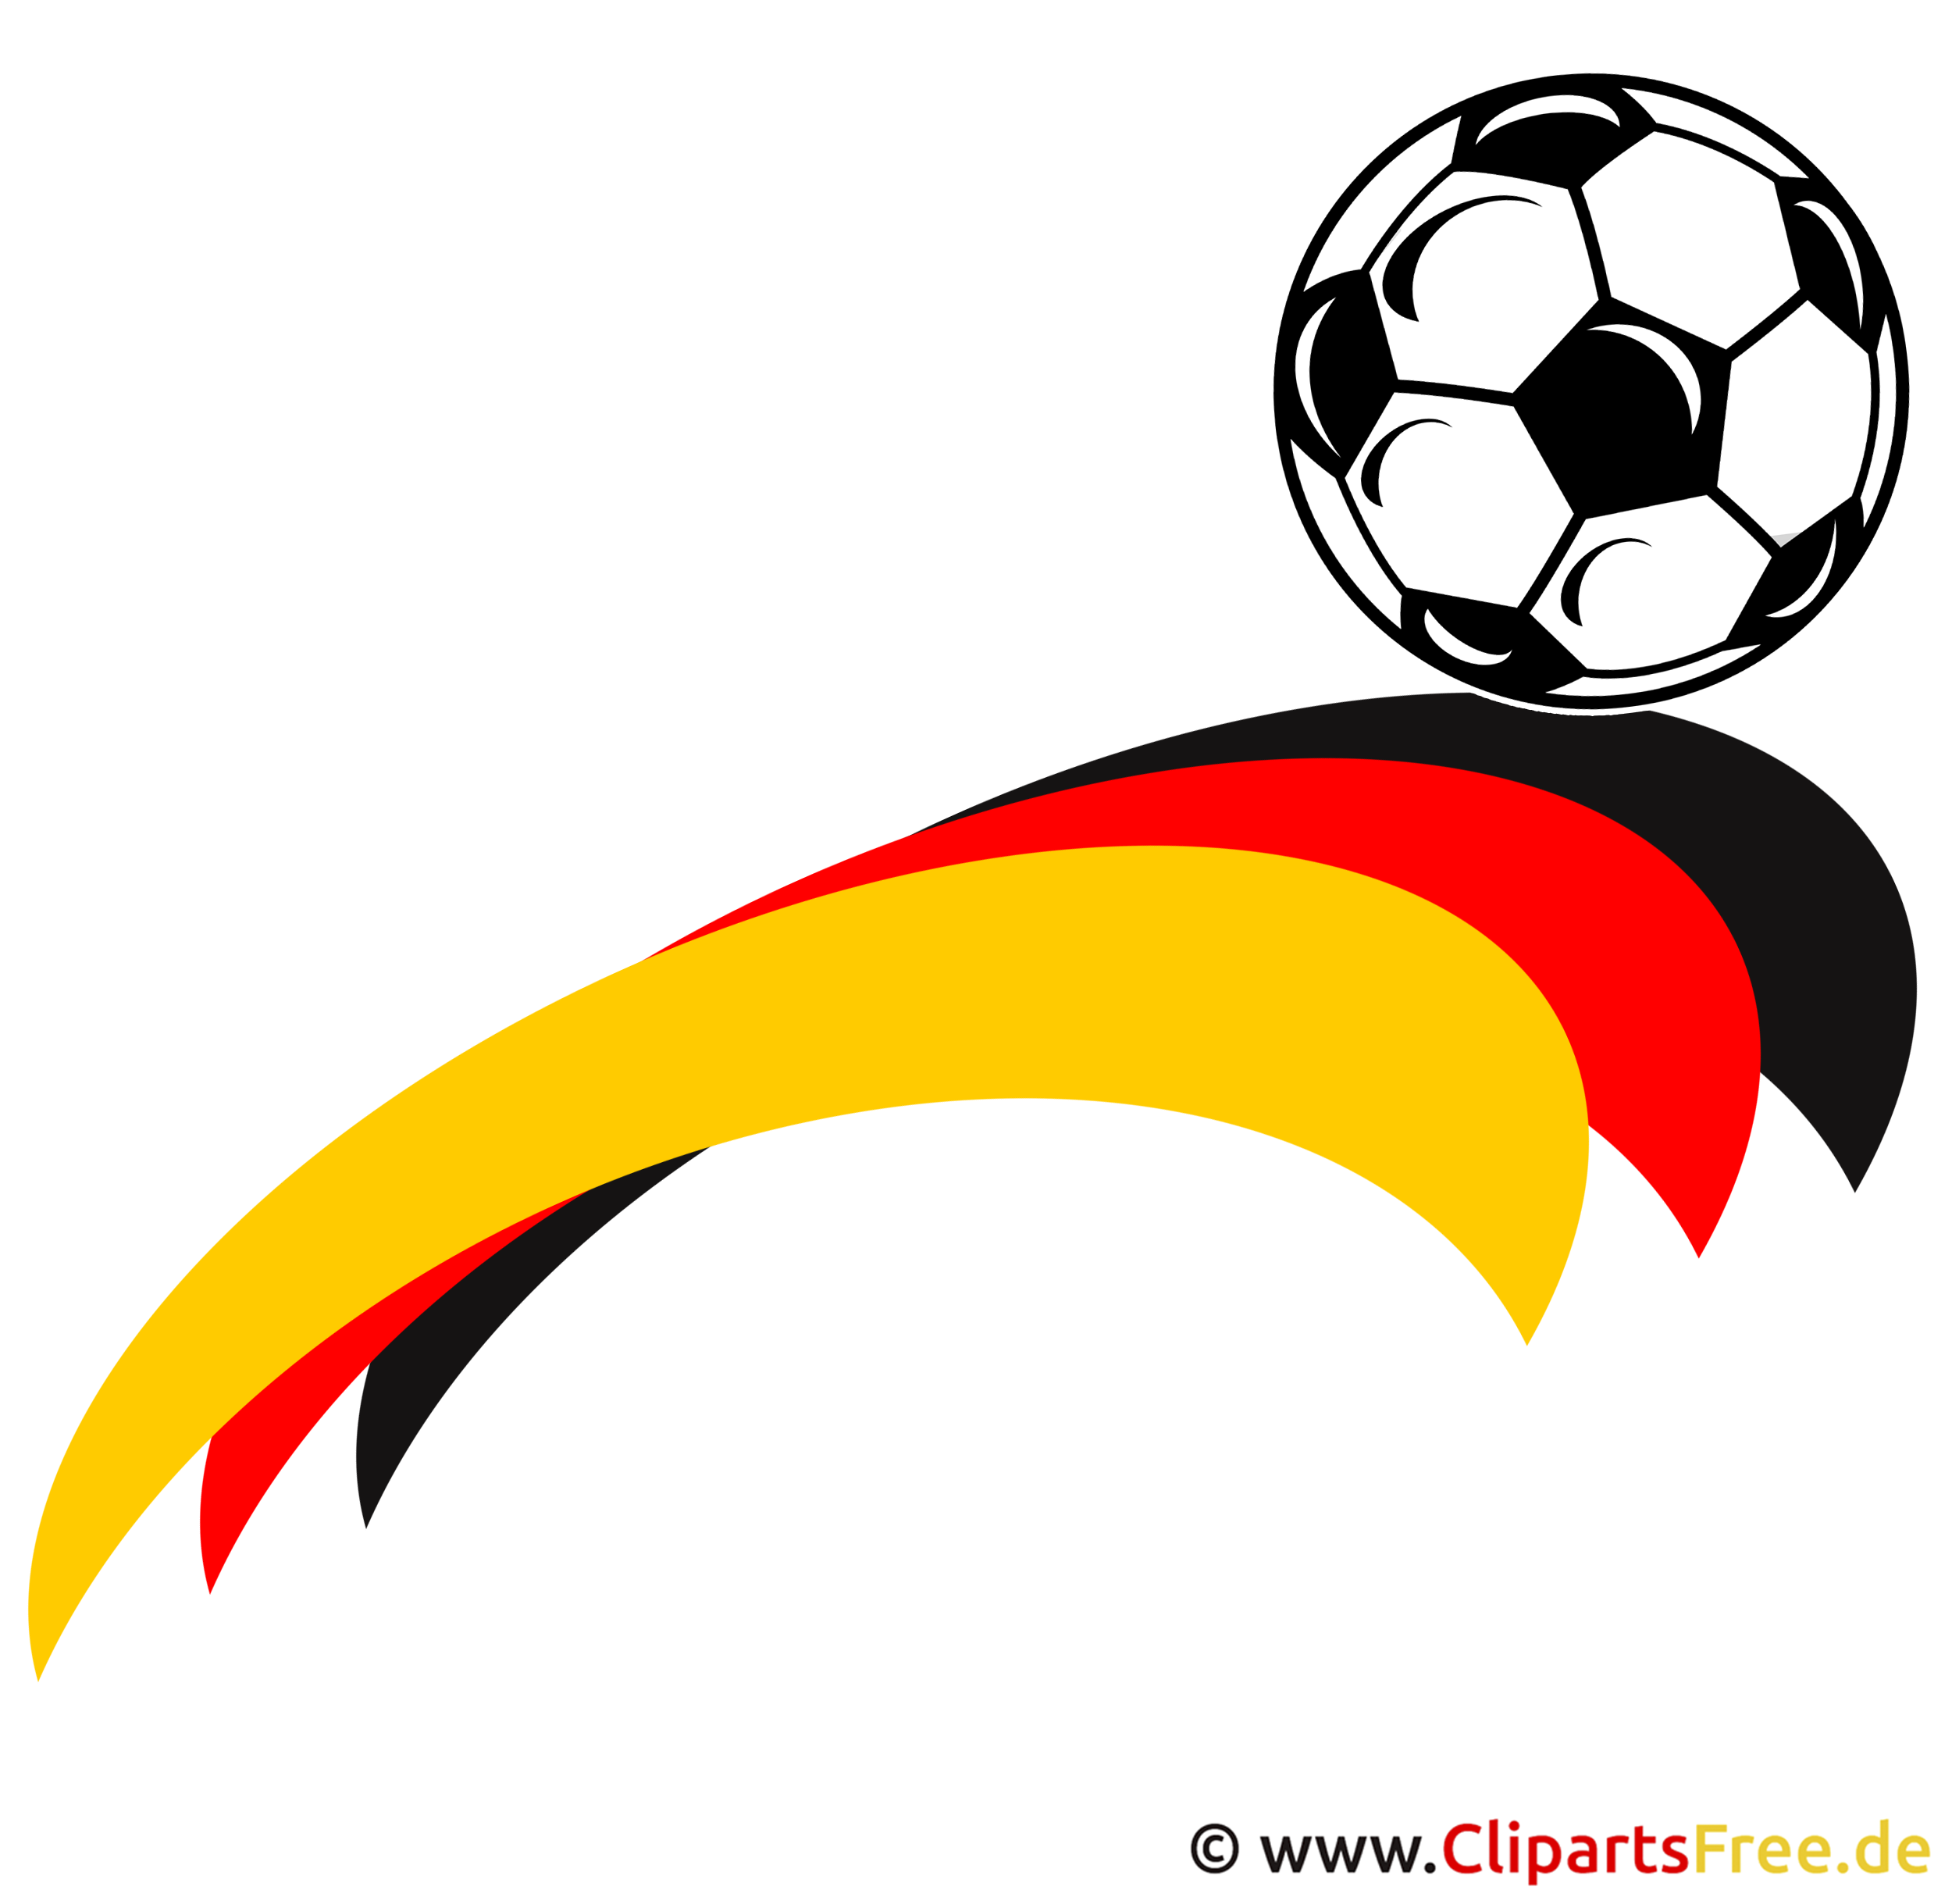 clipart fußball kostenlos download - photo #41